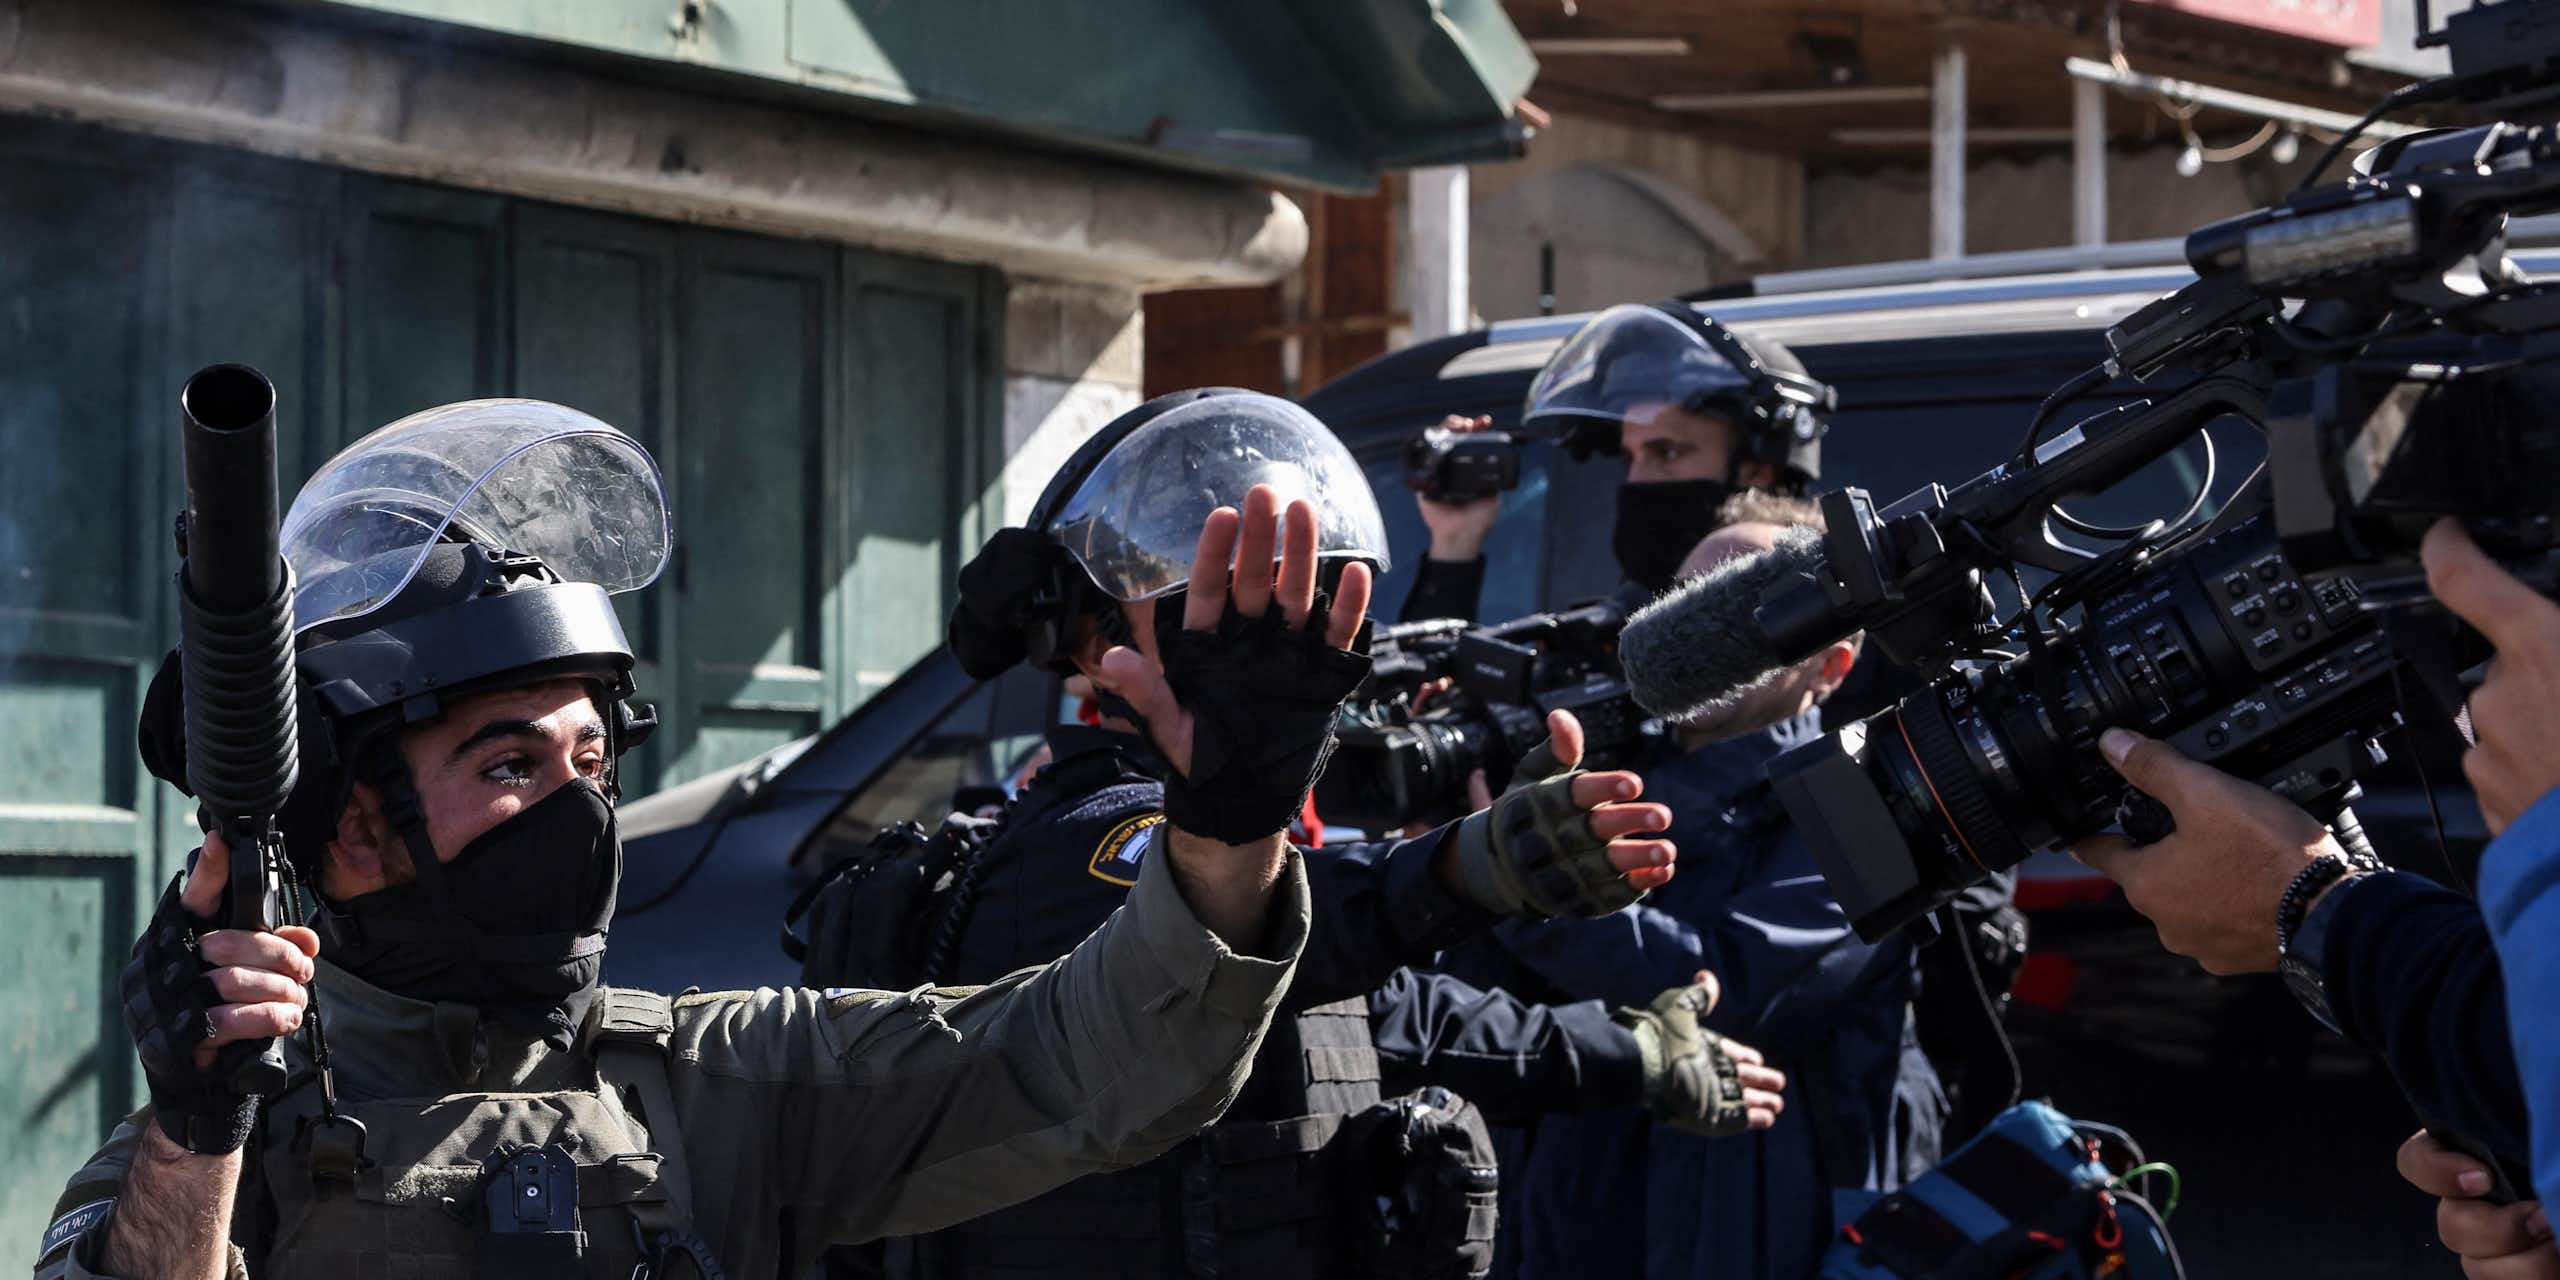 Des militaires armés et en uniforme face à des journalistes qui les filment